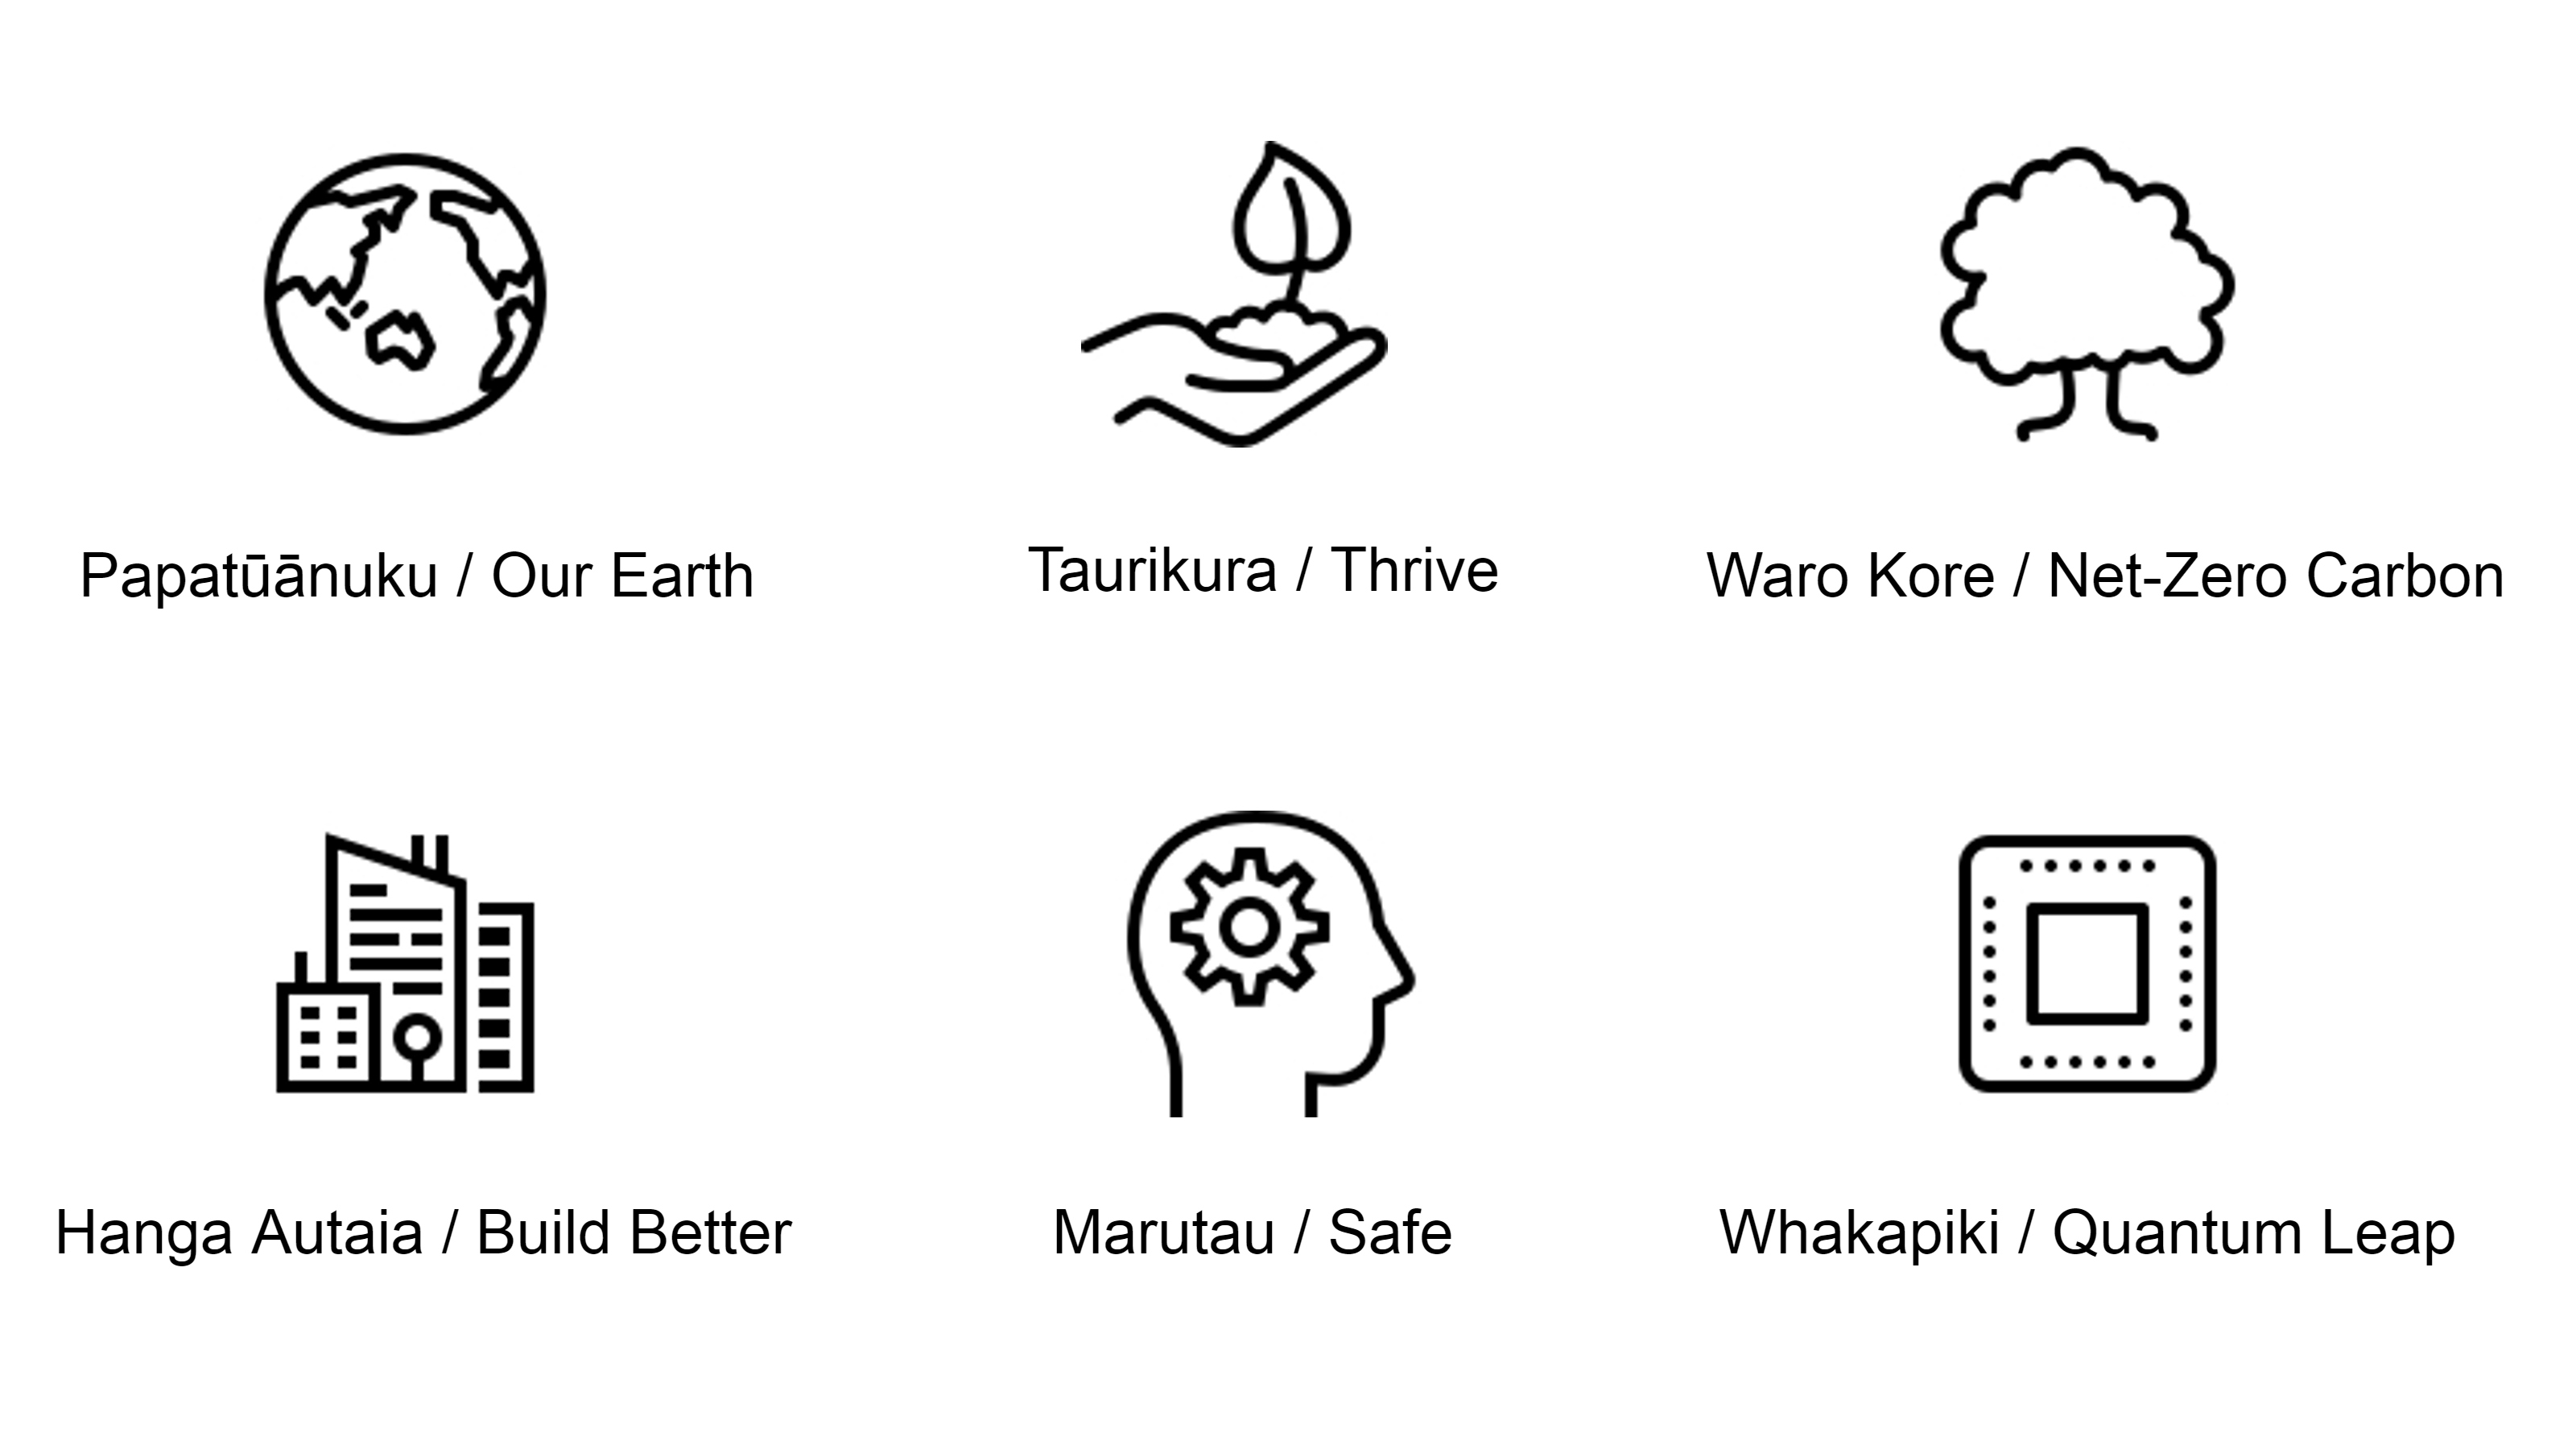 Six icons and Māori and English versions of SHEADI's values: Papatūānuku—Our Earth, Taurikura—Thrive, Waro Kore—Net-Zero Carbon, Hanga Autaia—Build Better, Marutau—Safe, Whakapiki—Quantum Leap